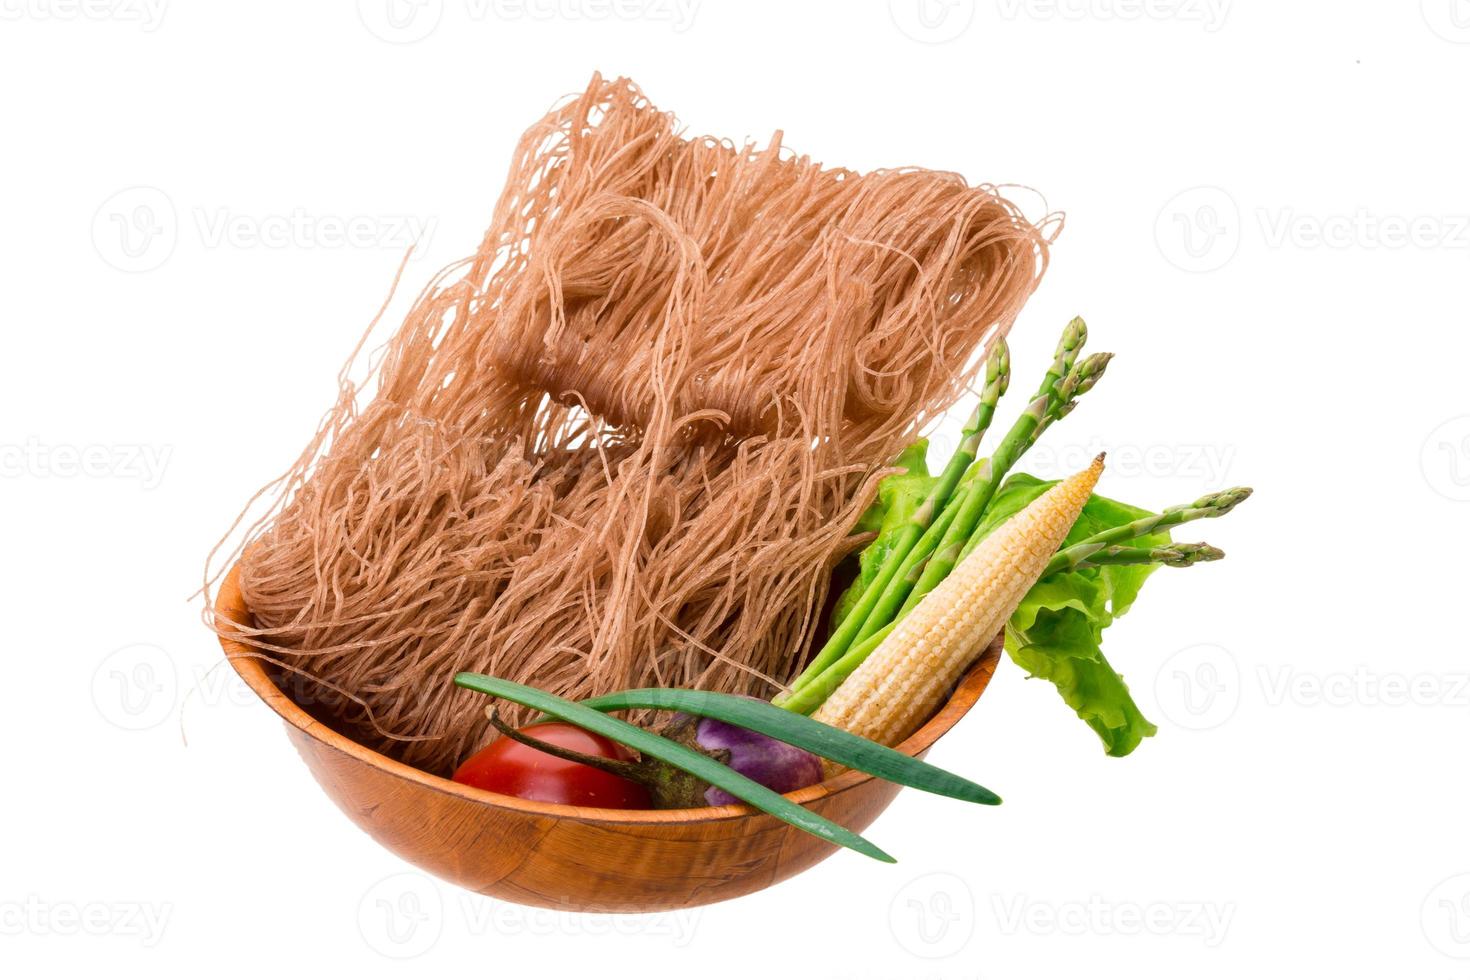 råa risnudlar i en skål på vit bakgrund foto